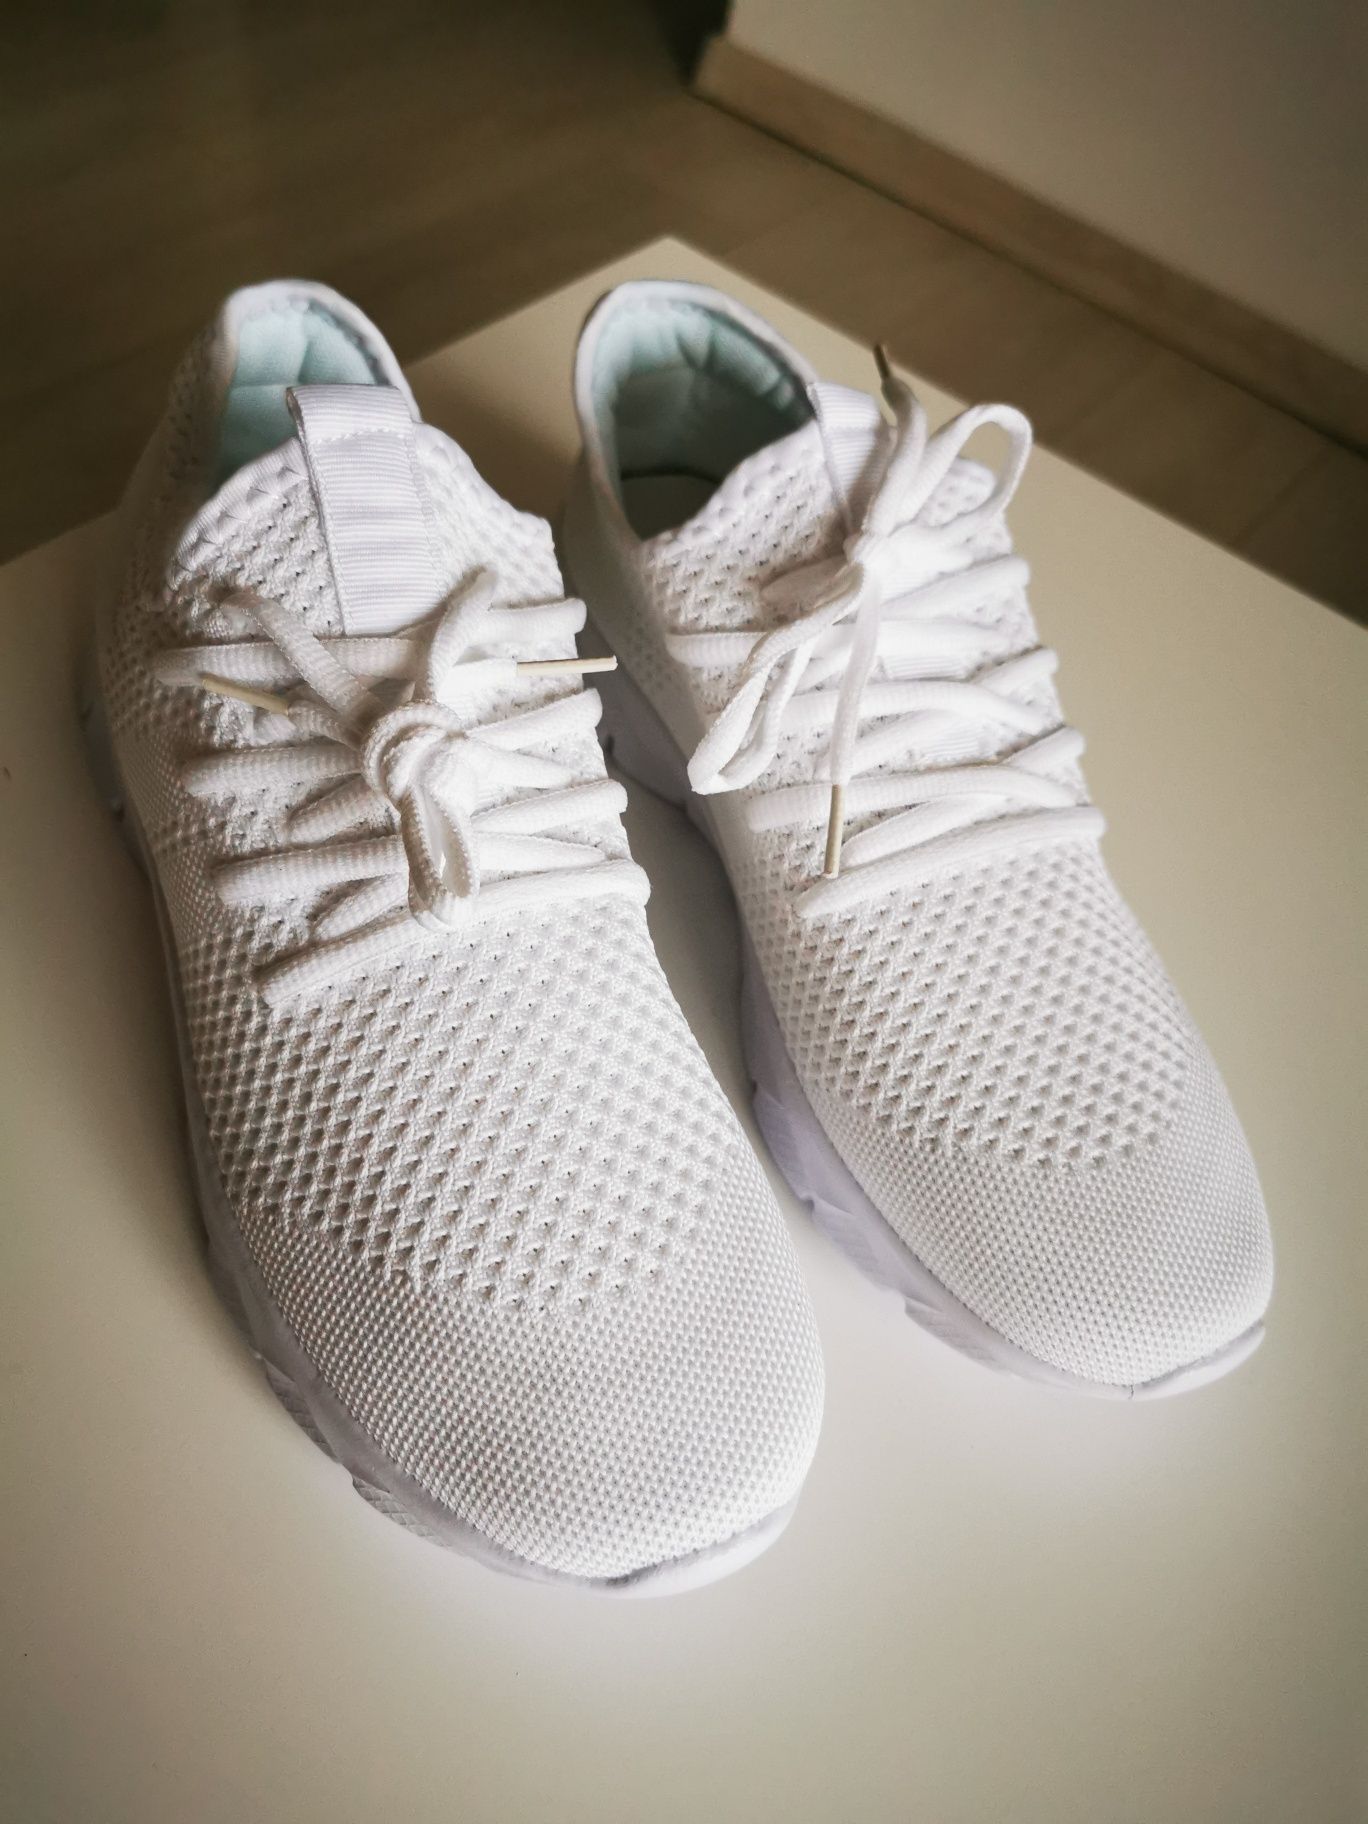 Adidasi (Sneakers) Sport albi